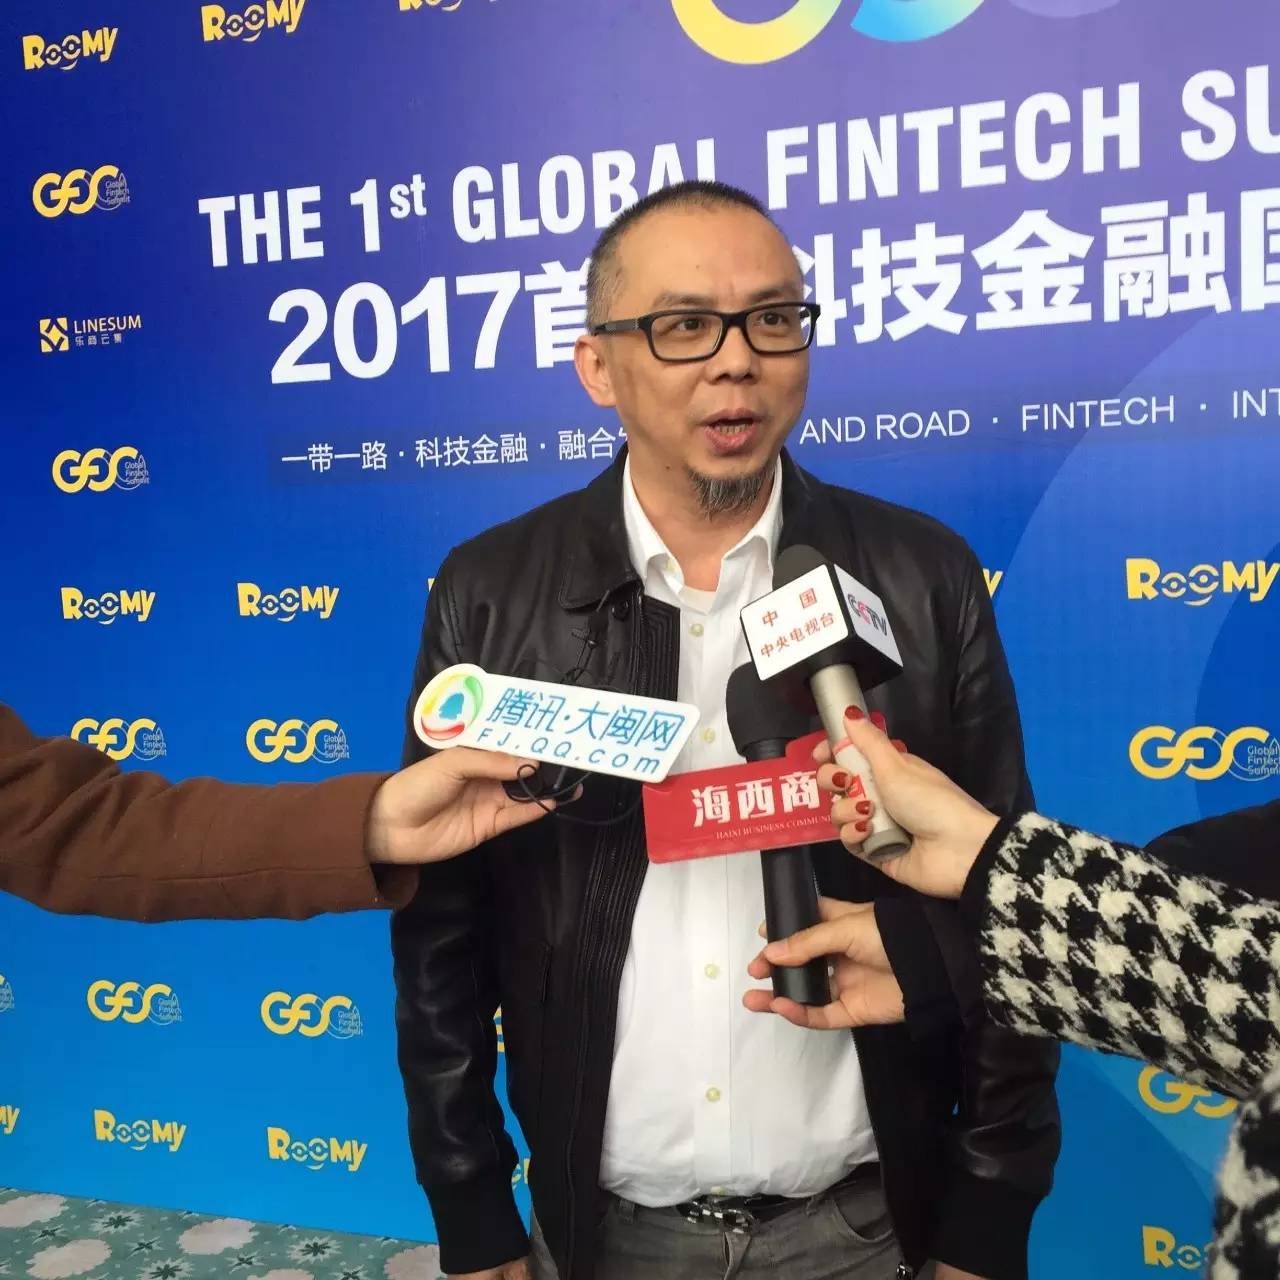 杨澜主持,李稻葵发声 2017首届科技金融国际峰